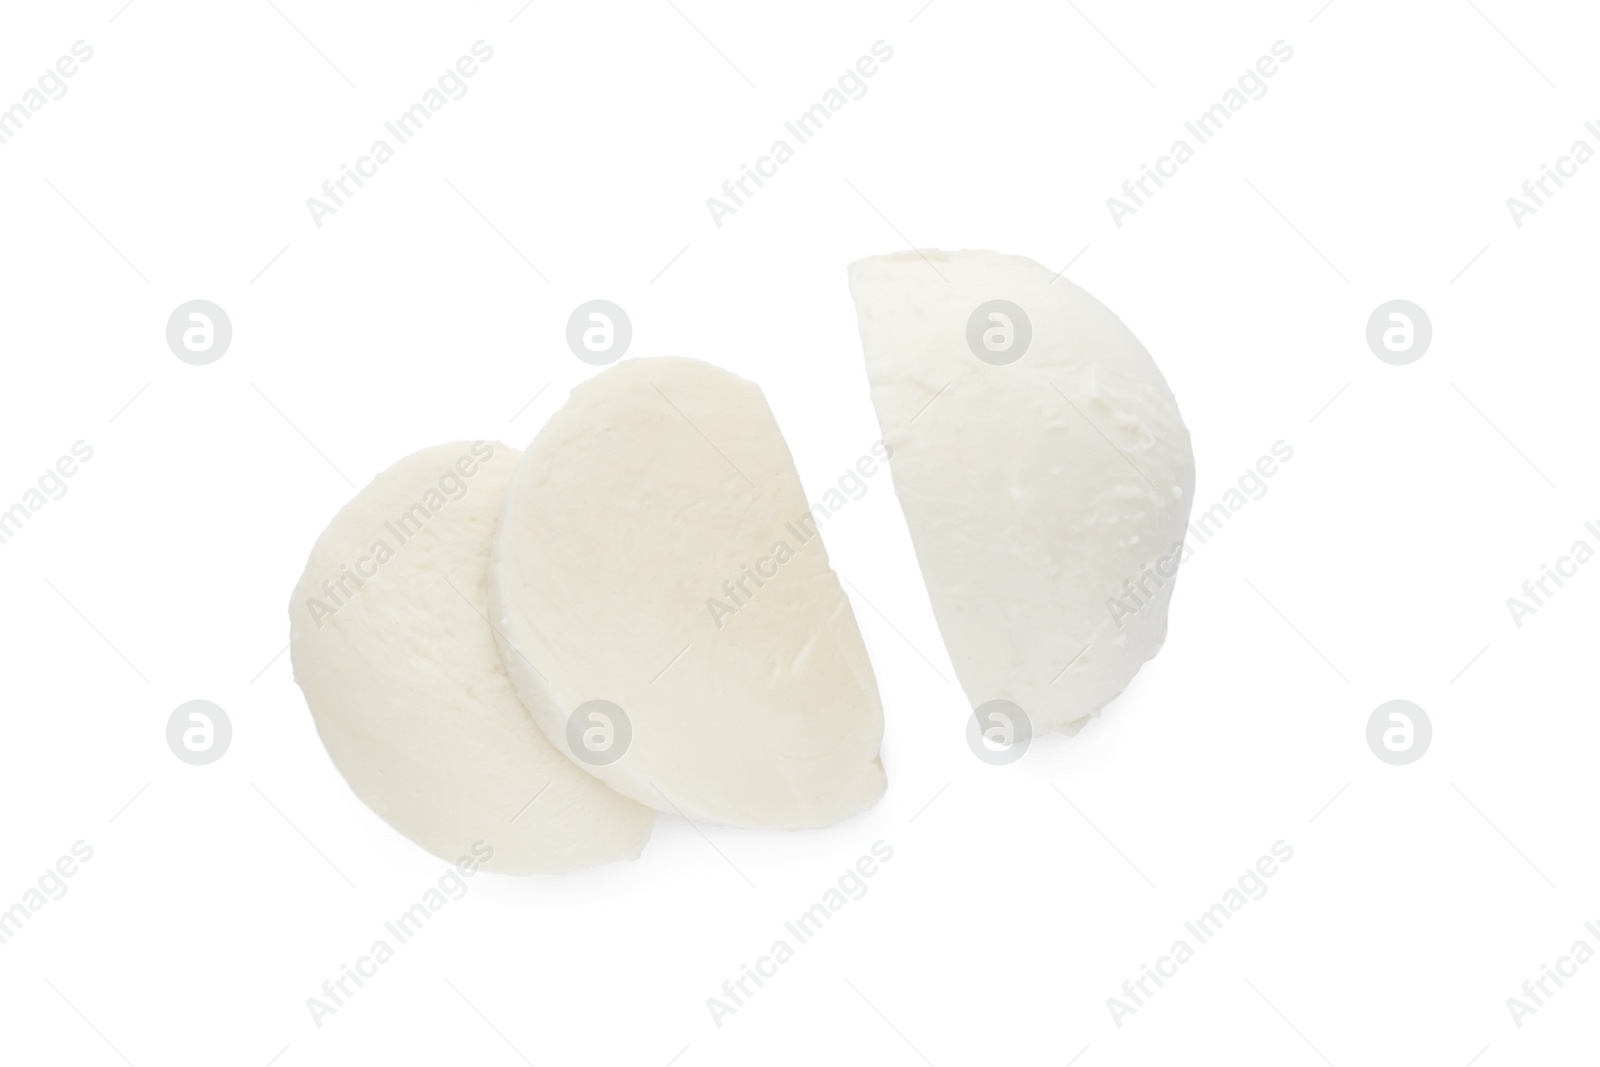 Photo of Delicious mozzarella cheese slices on white background, top view